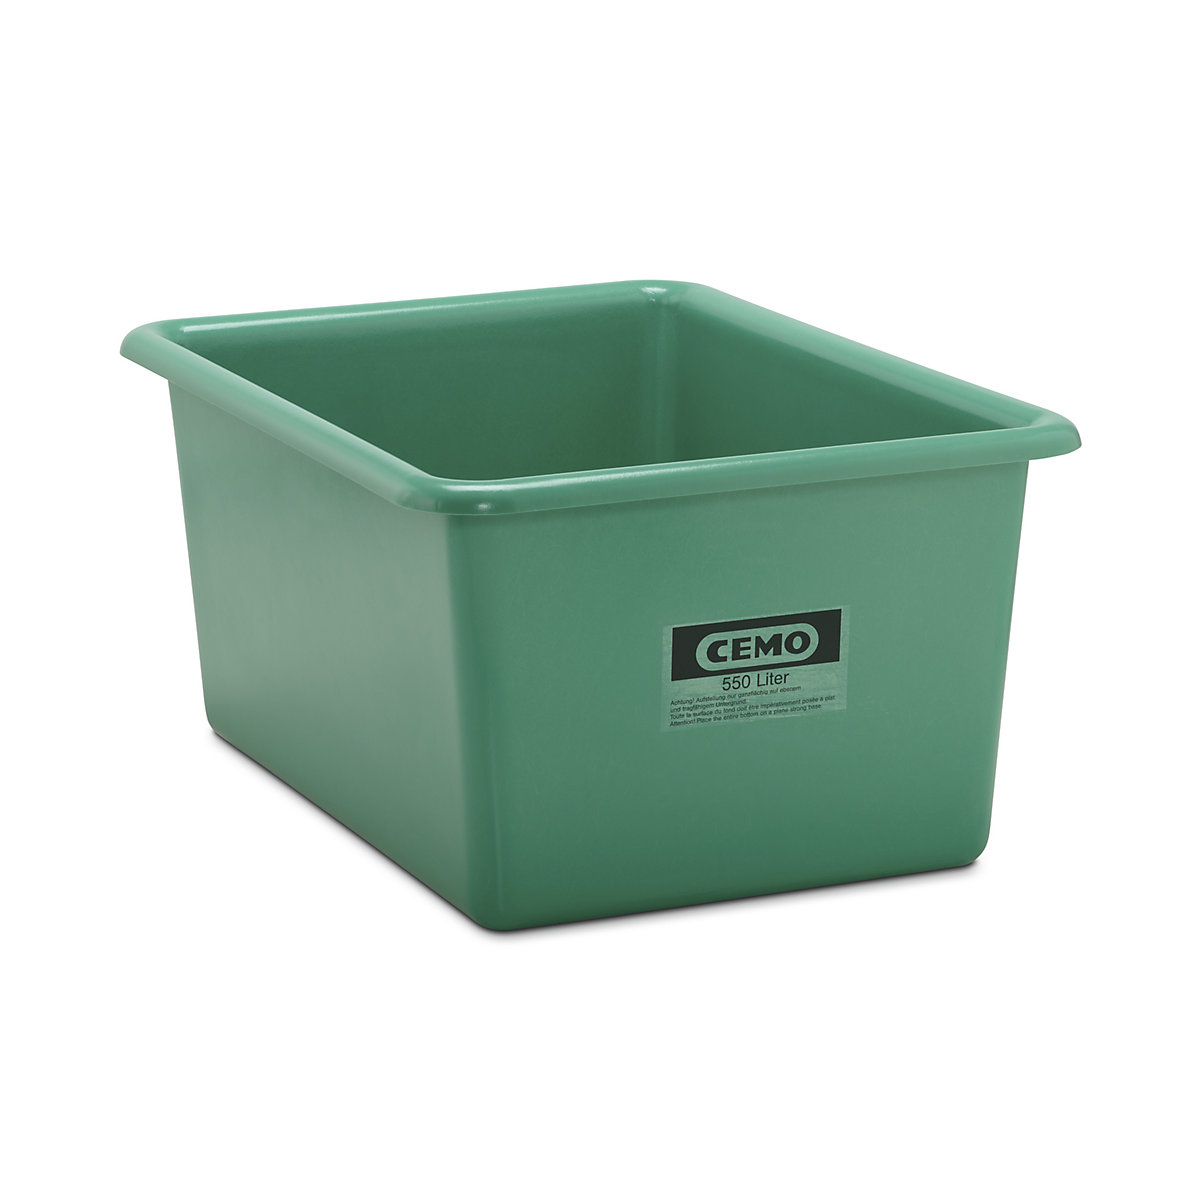 CEMO Großbehälter aus GfK, Inhalt 550 l, LxBxH 1320 x 970 x 620 mm, grün